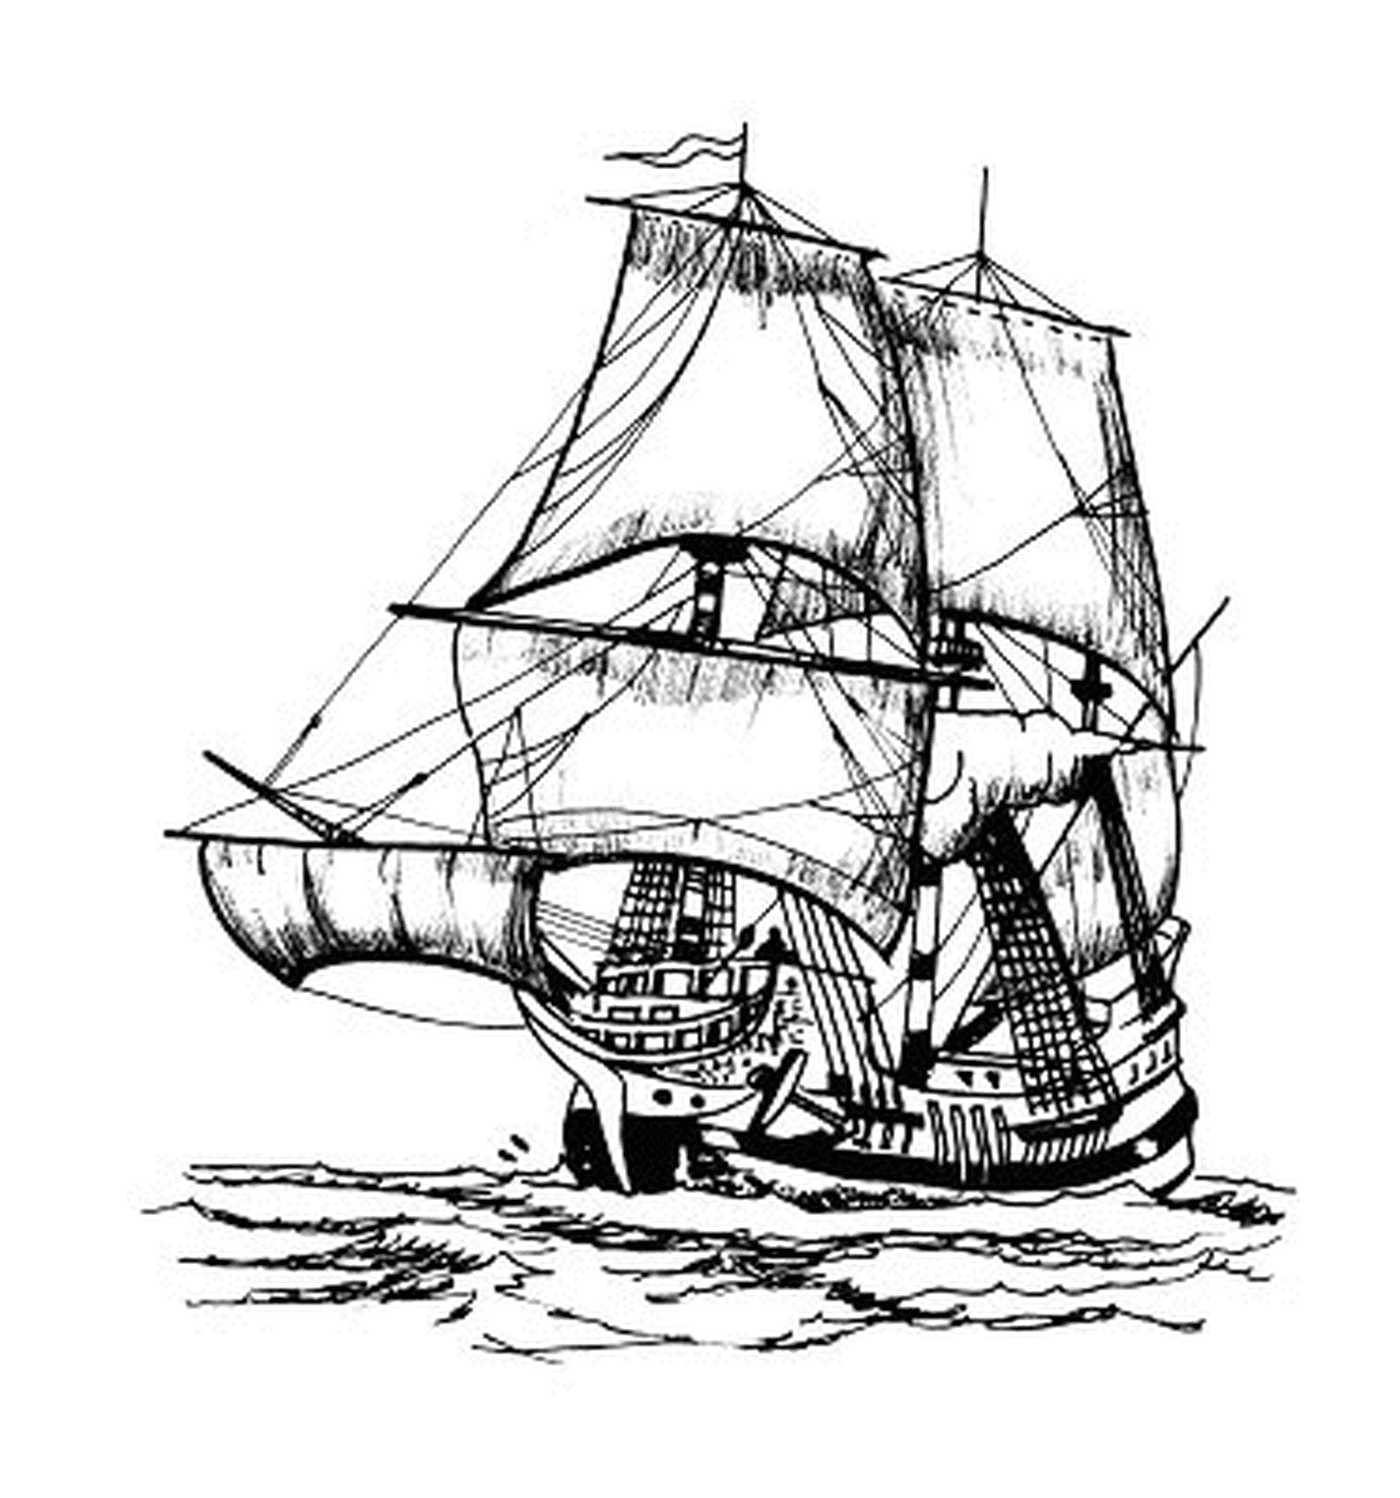  Пиратское судно, плывущее над океаном 